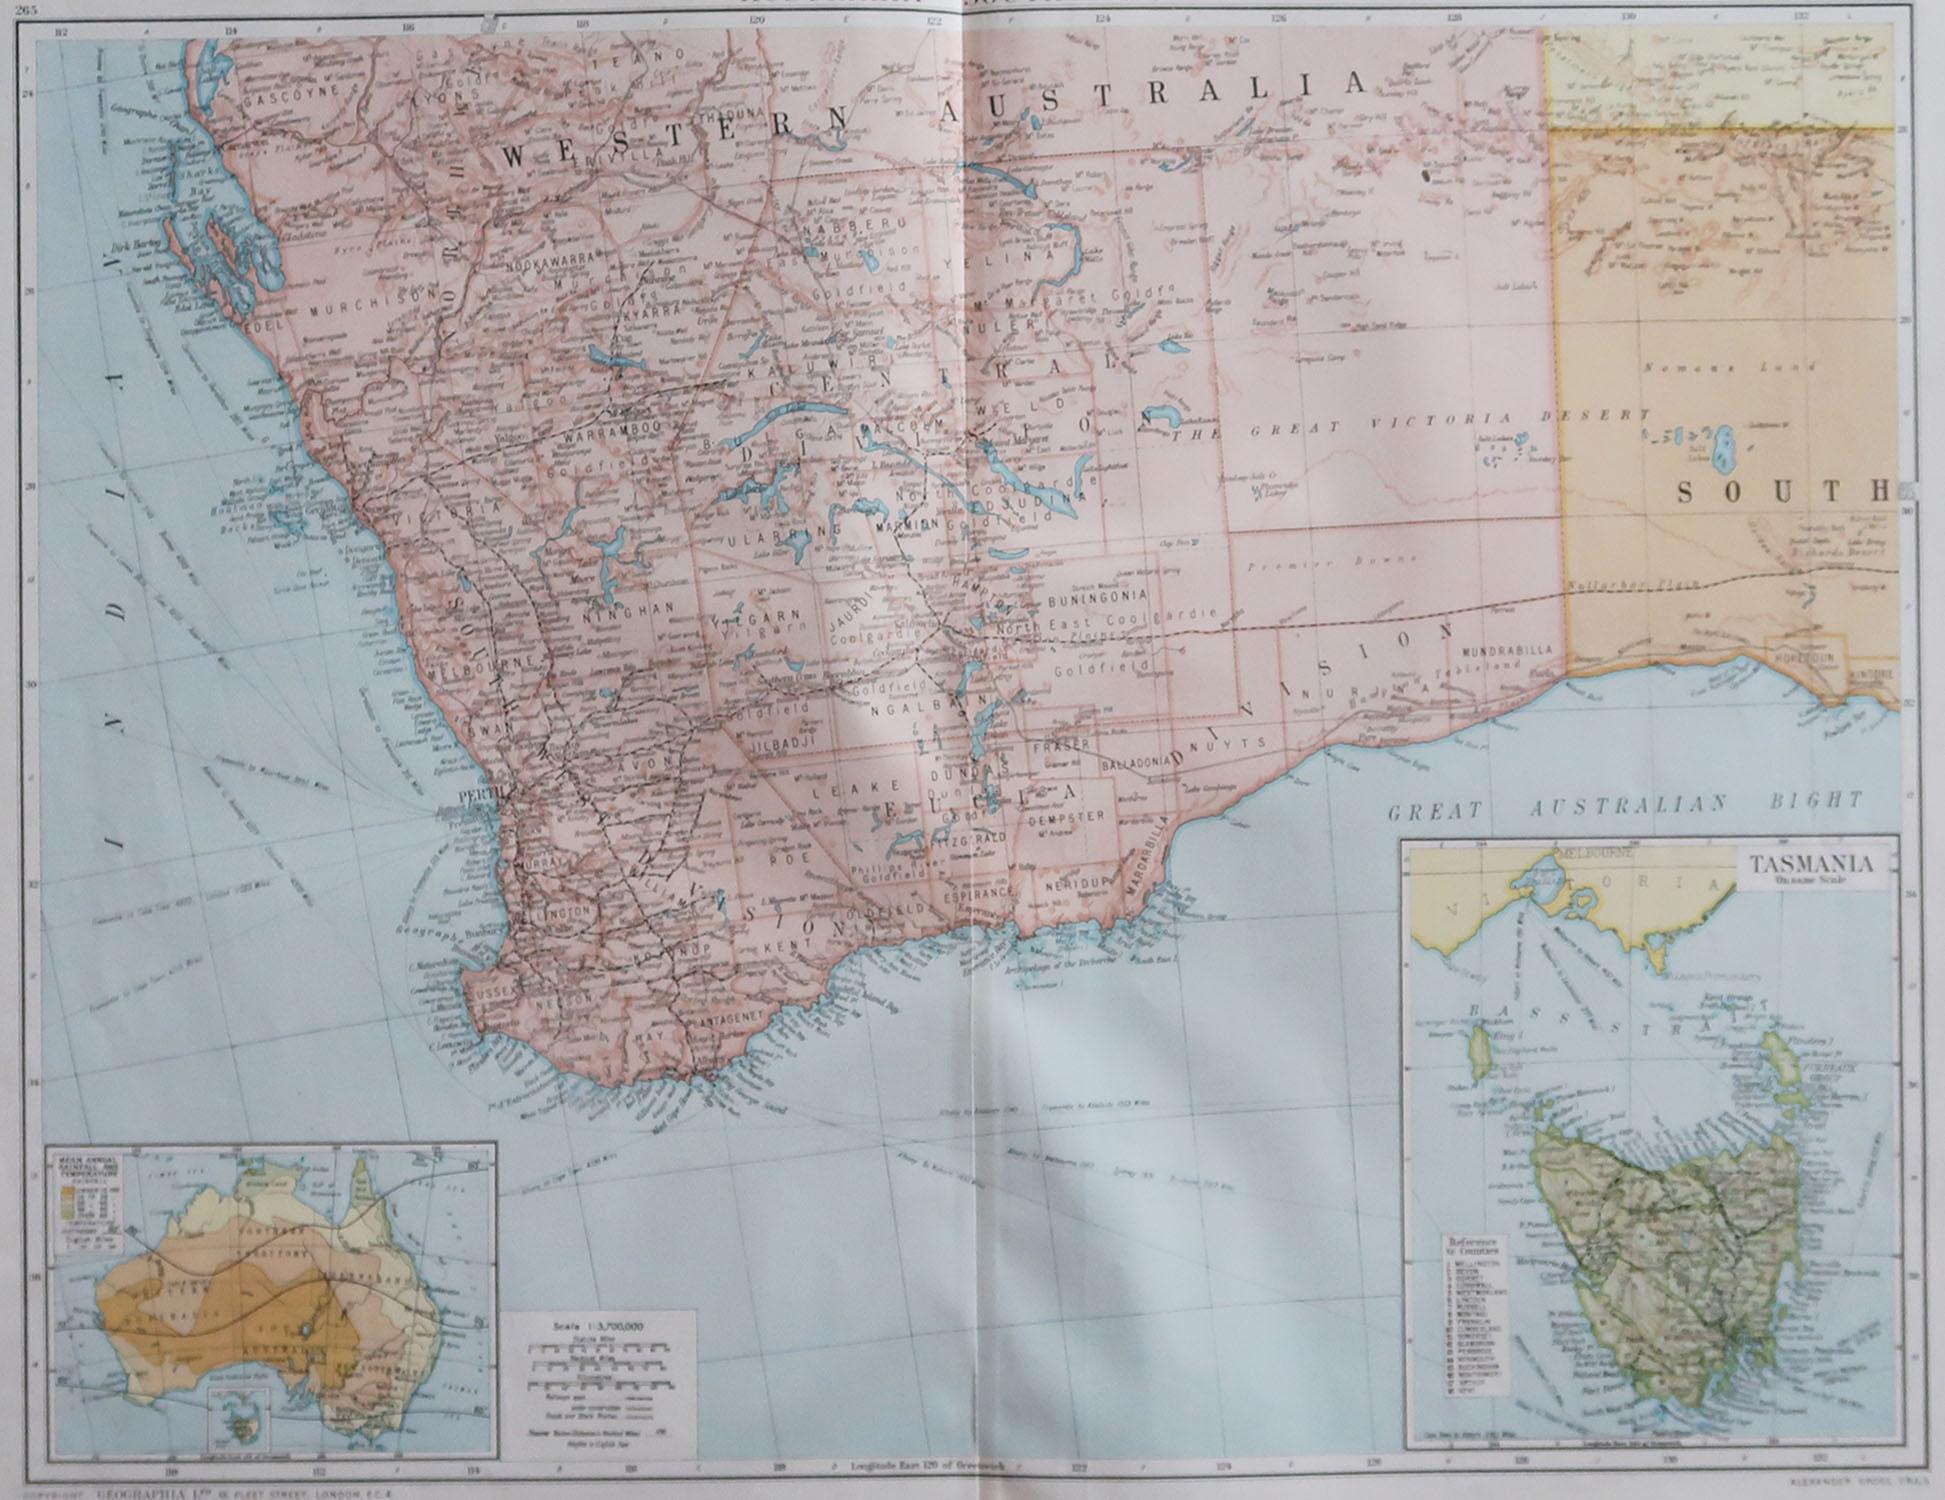 Grande carte de l'Australie occidentale avec une vignette de la Tasmanie.

Couleur originale. 

Bon état 

Publié par Alexander Gross

Non encadré.








